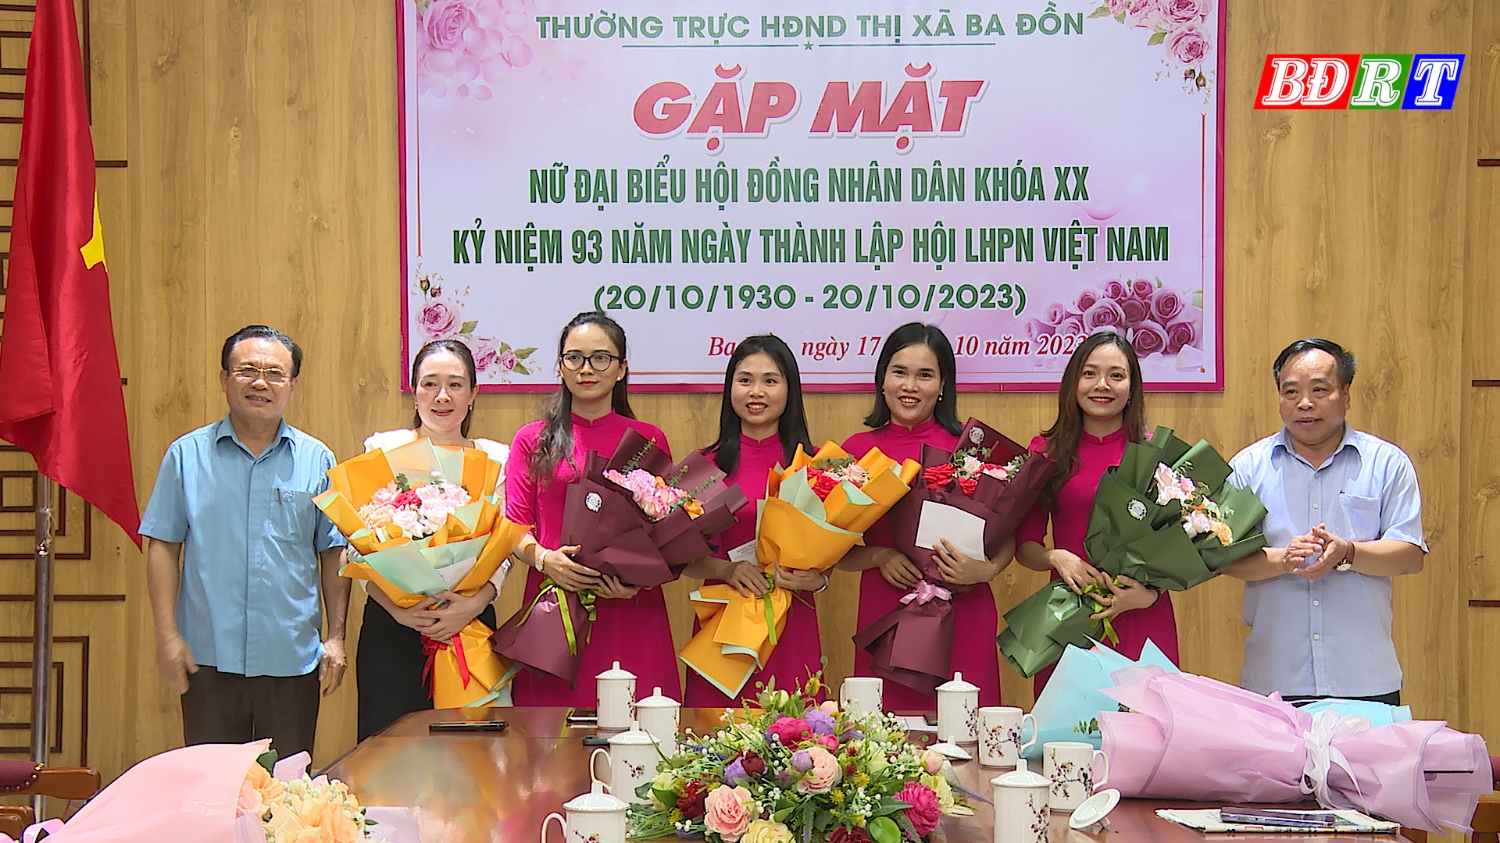 Tặng quà cho chị em Phụ nữ nhân kỷ niệm 93 năm ngày thành lập phụ nữ Việt Nam 20 10